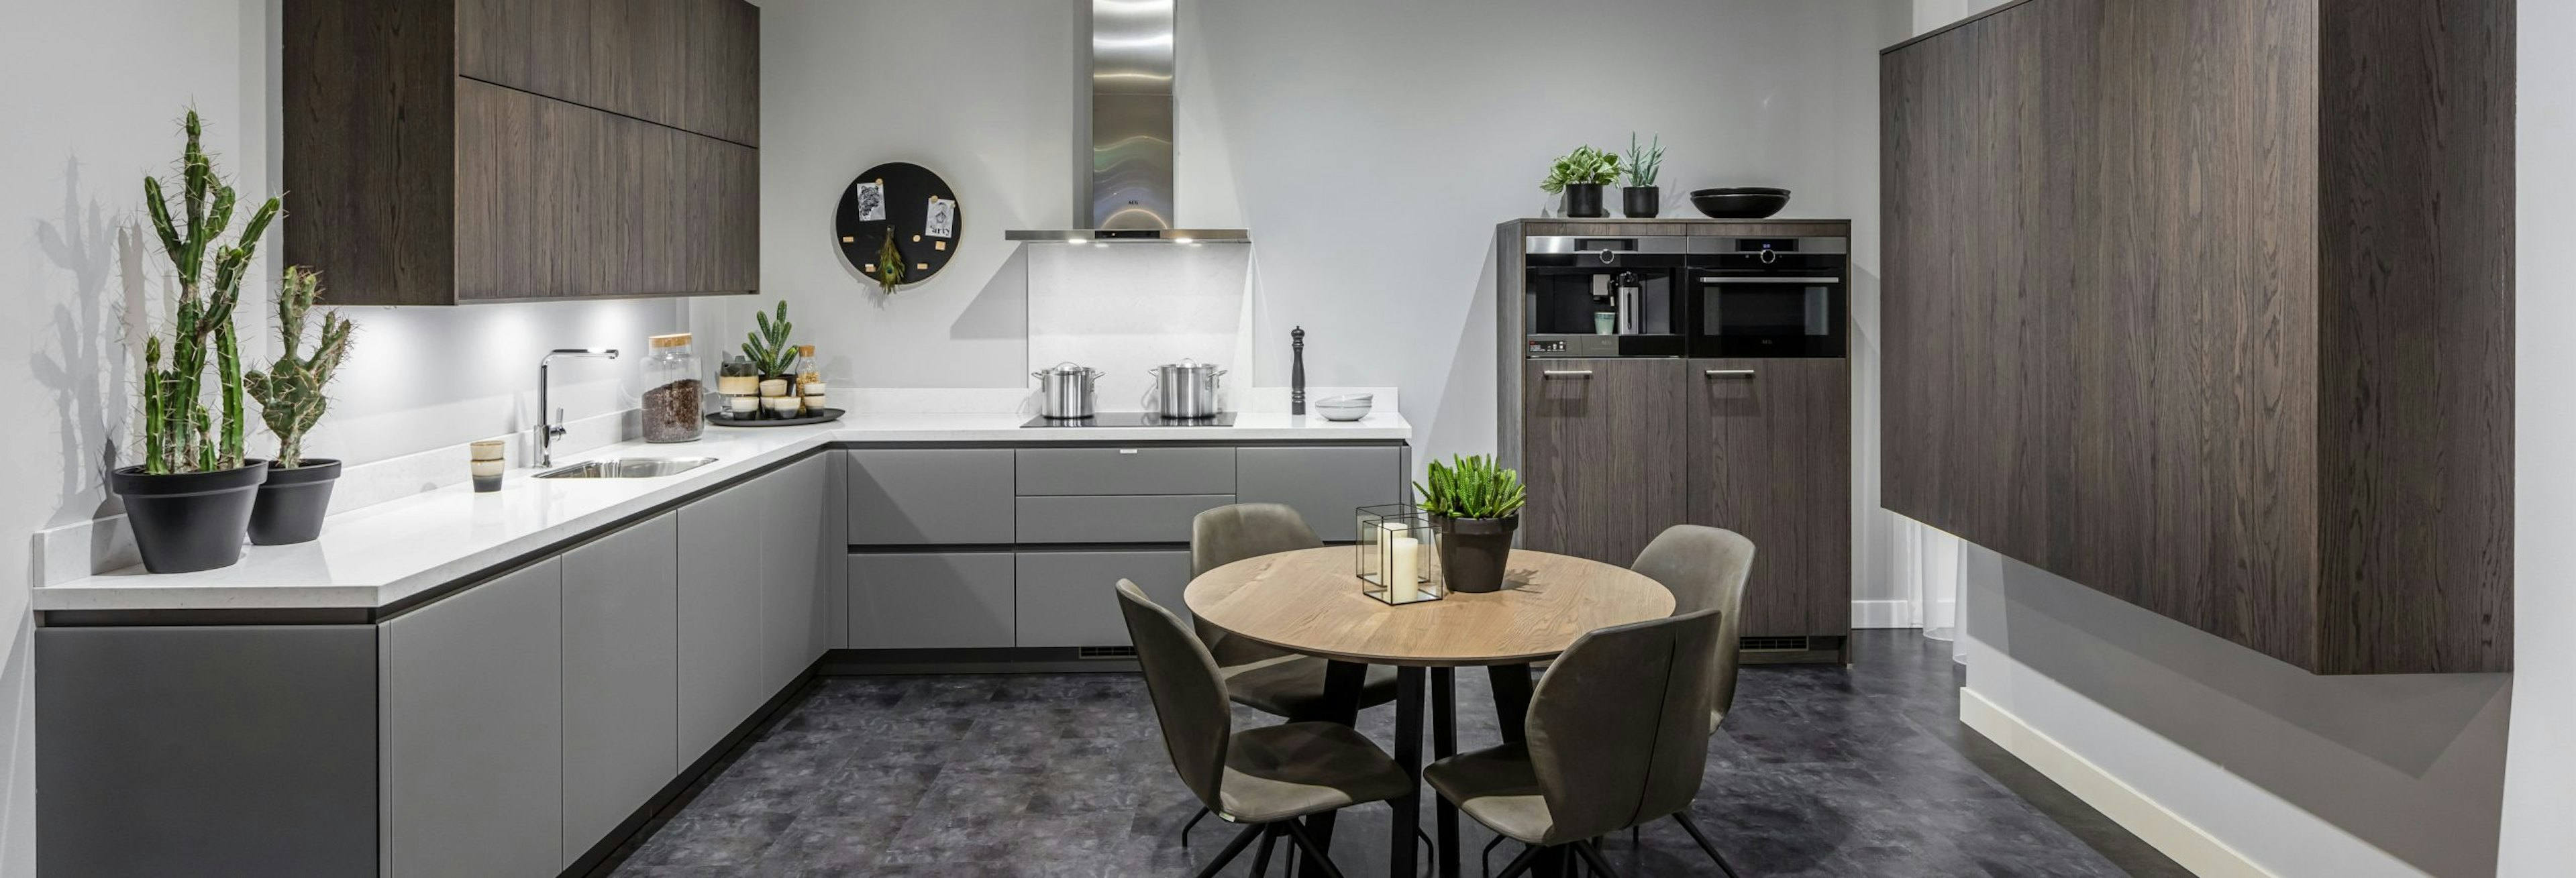 Keuken 1400218 - Moderne grijze keuken met glazen fronten en houten keukenelementen